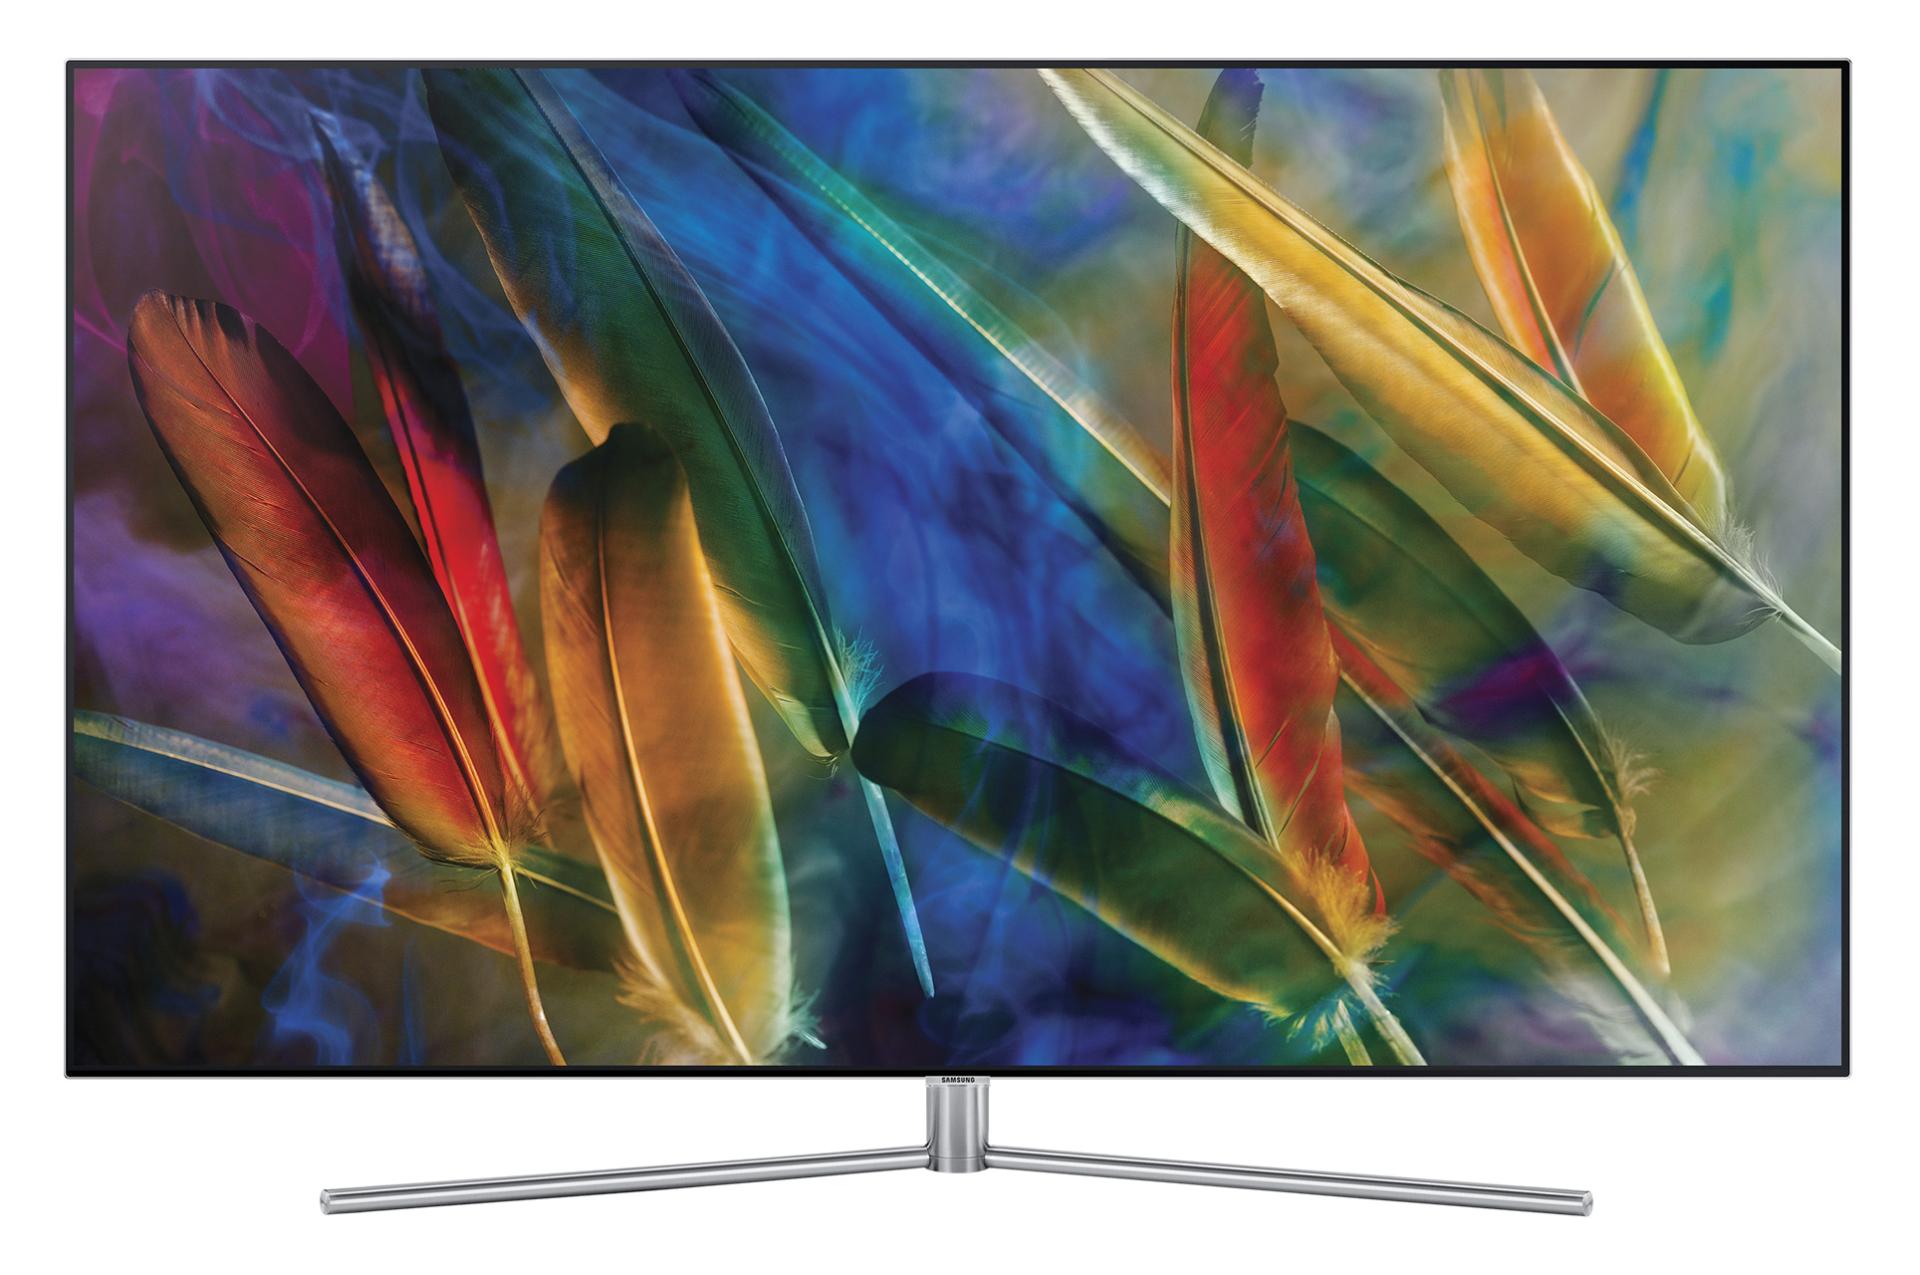 نمای جلو تلویزیون QLED سامسونگ Q7770 مدل 55 اینچ با صفحه روشن